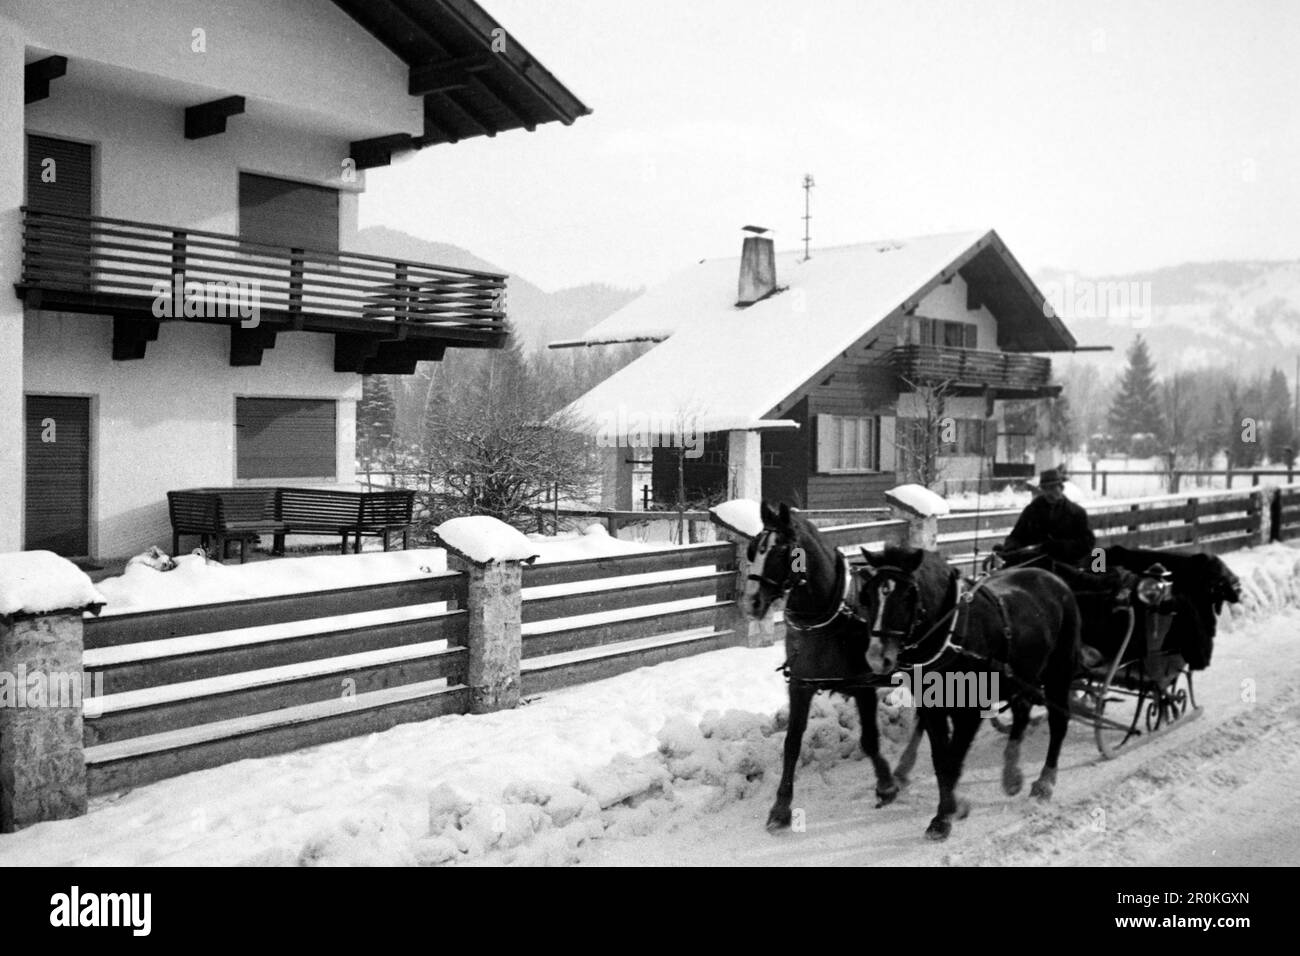 Pferdeschlitten vor regionaltypische Wohnhäuser, Garmisch Partenkirchen 1936. Pferdeschlitten vor typischen regionalen Häusern, Garmisch Partenkirchen 1936. Stockfoto